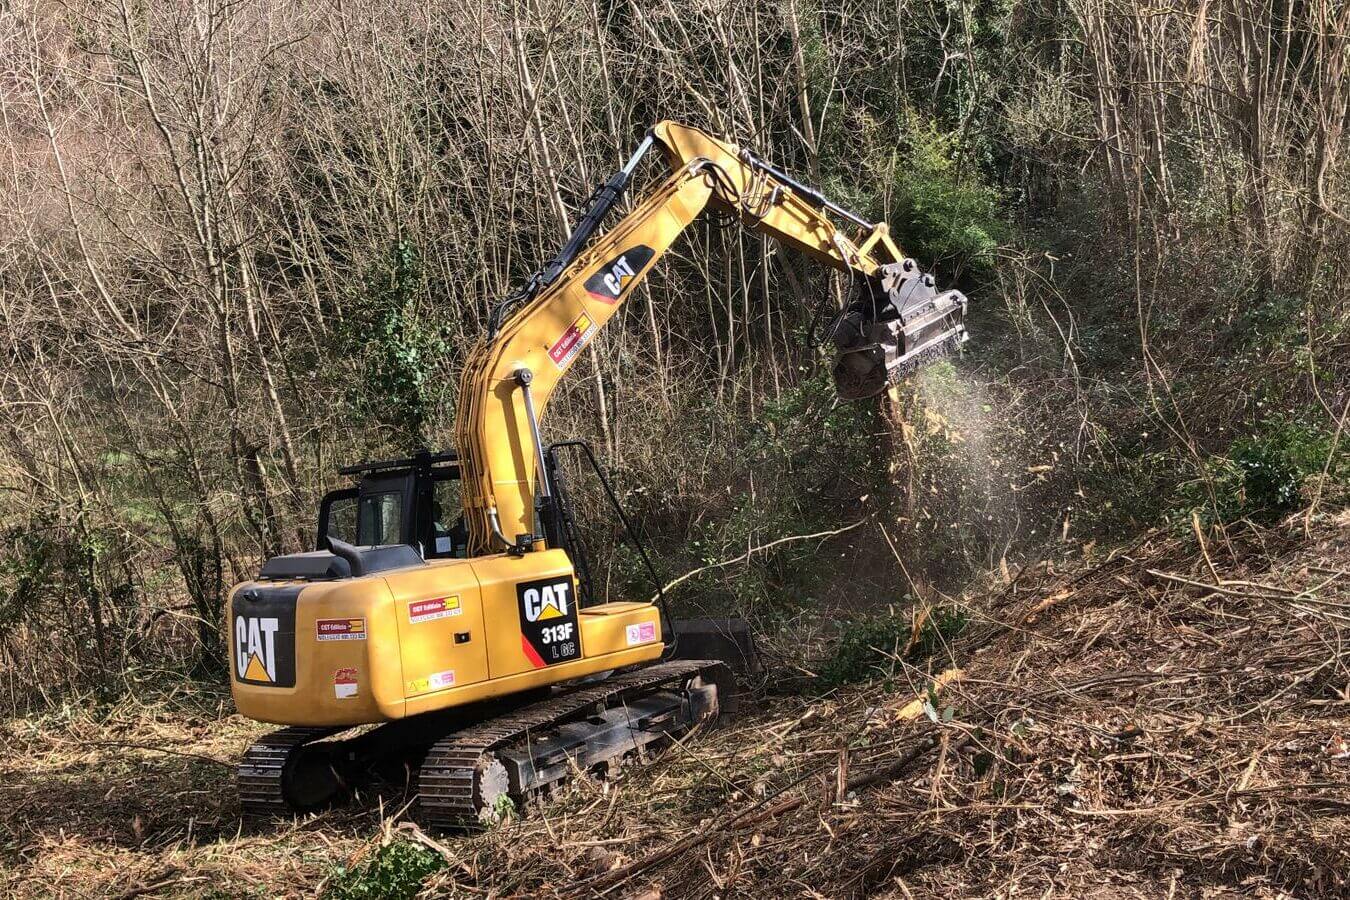 Escavatore caterpillar 313 a noleggio da CGTE con decespugliatore al lavoro in una bonifica in un bosco CGTE Vermietung: